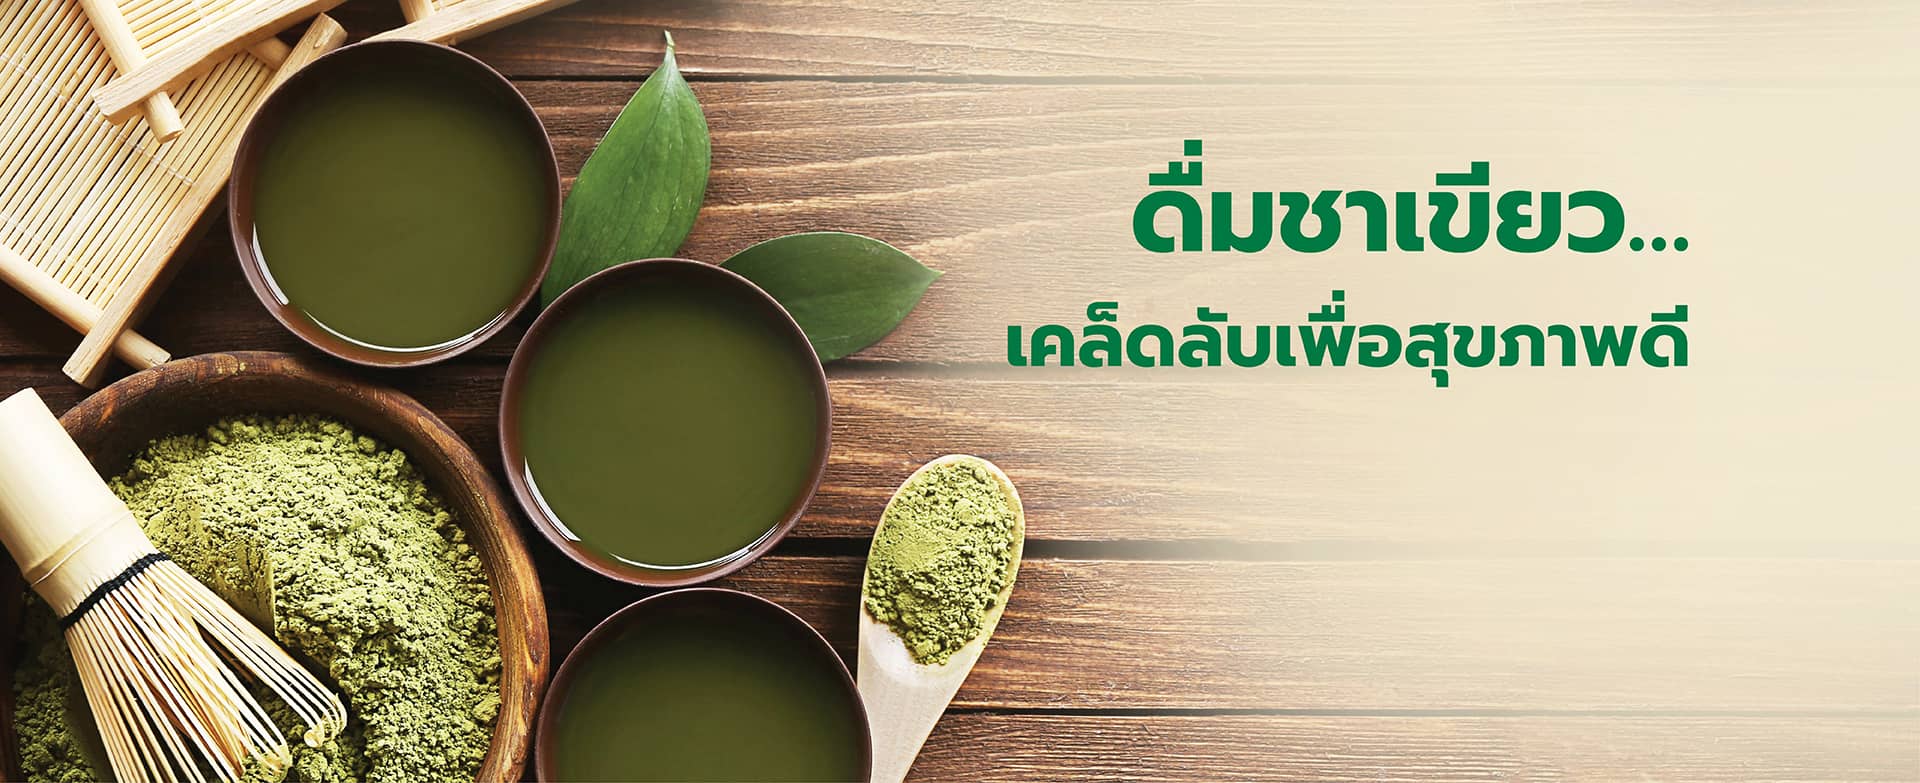 ดื่มชาเขียว... เคล็ดลับเพื่อสุขภาพดี